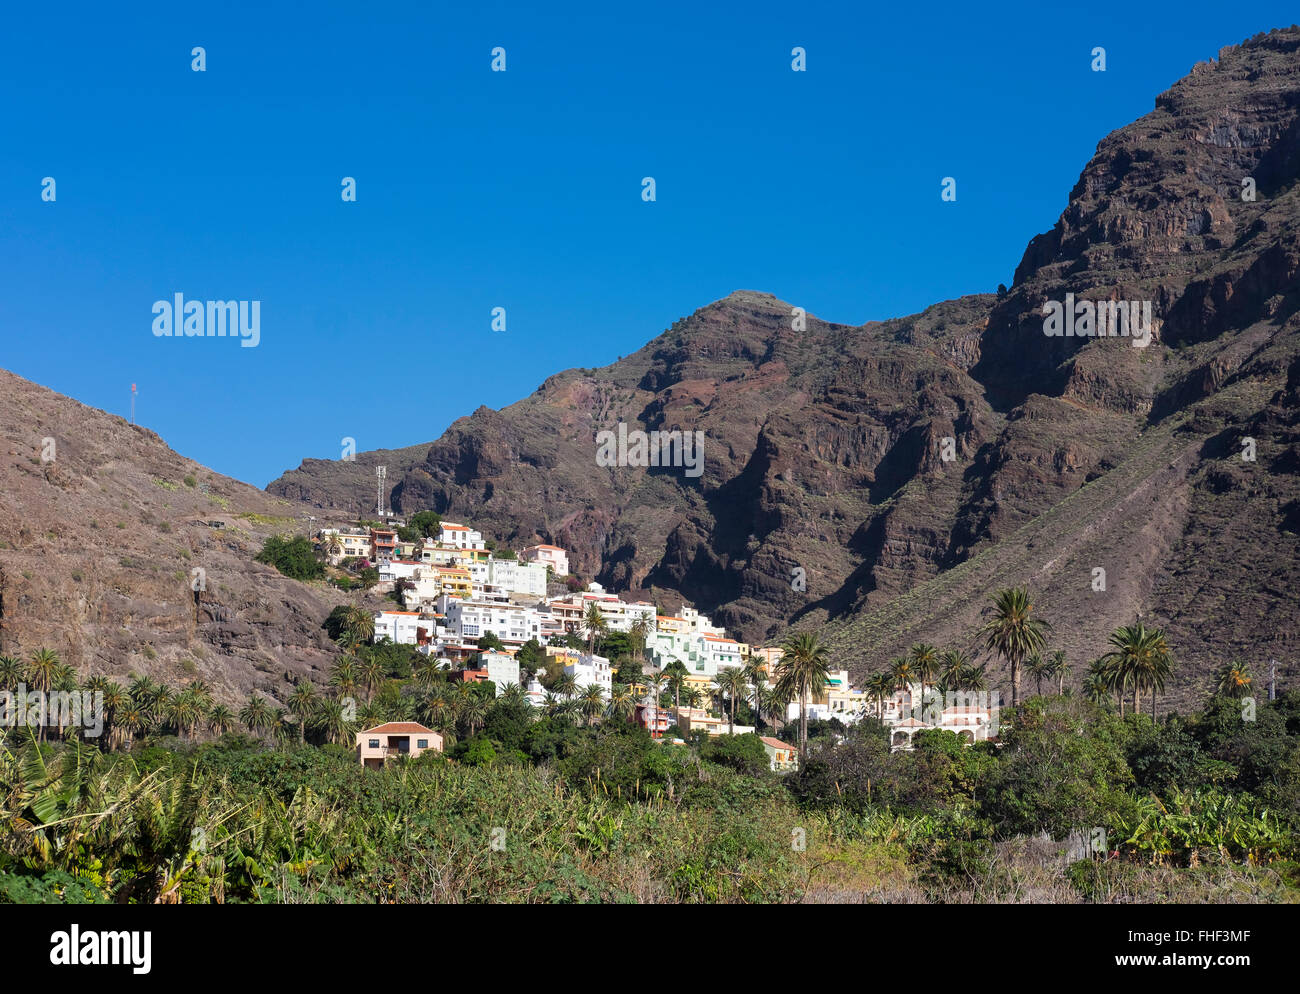 La Calera, Valle Gran Rey, La Gomera, Canary Islands, Spain Stock Photo